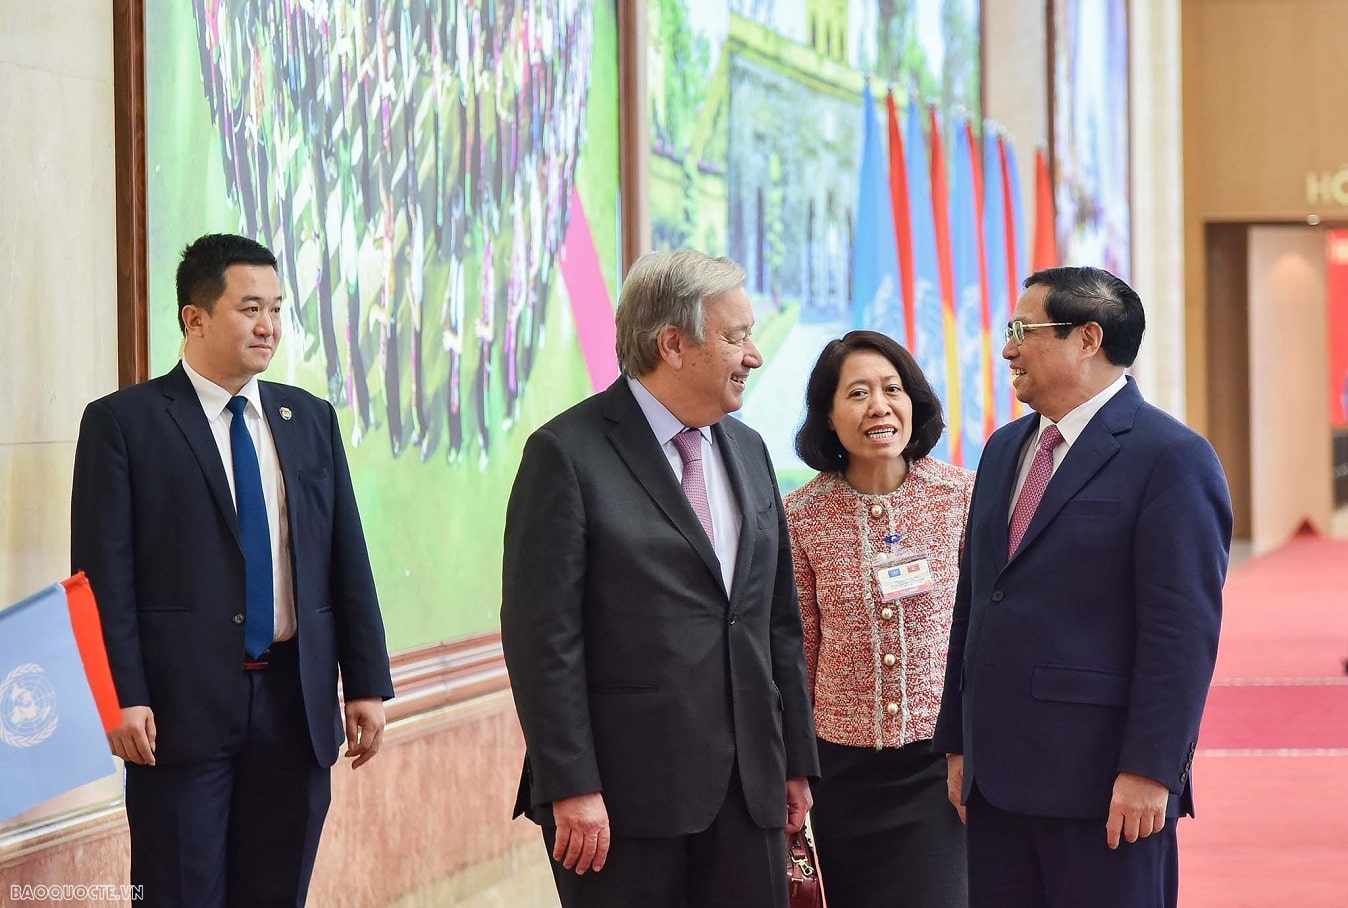 Thủ tướng Phạm Minh Chính giới thiệu với Tổng thư ký LHQ António Guterres hình ảnh các Di sản văn hóa của Việt Nam đã được UNESCO công nhận. Tổng thư ký Guterres bày tỏ về những ấn tượng đối với những Di sản văn hóa của Việt Nam.